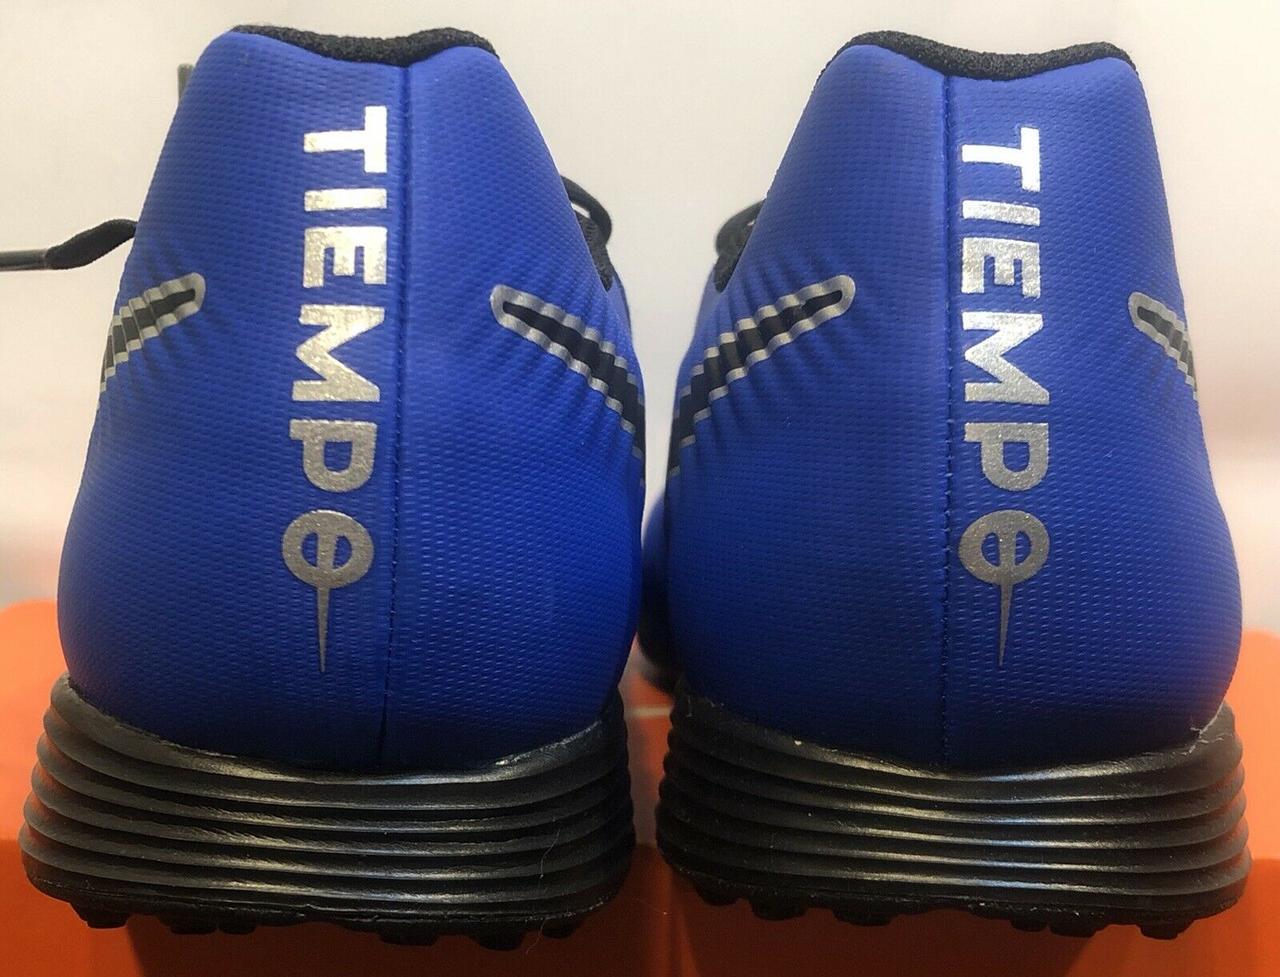 partido Democrático Donación Influencia Купить Сороконожки Nike Tiempo Legend VII TF. Оригинал. AH7243 400, цена  1450 ₴ — Prom.ua (ID#1099558436)